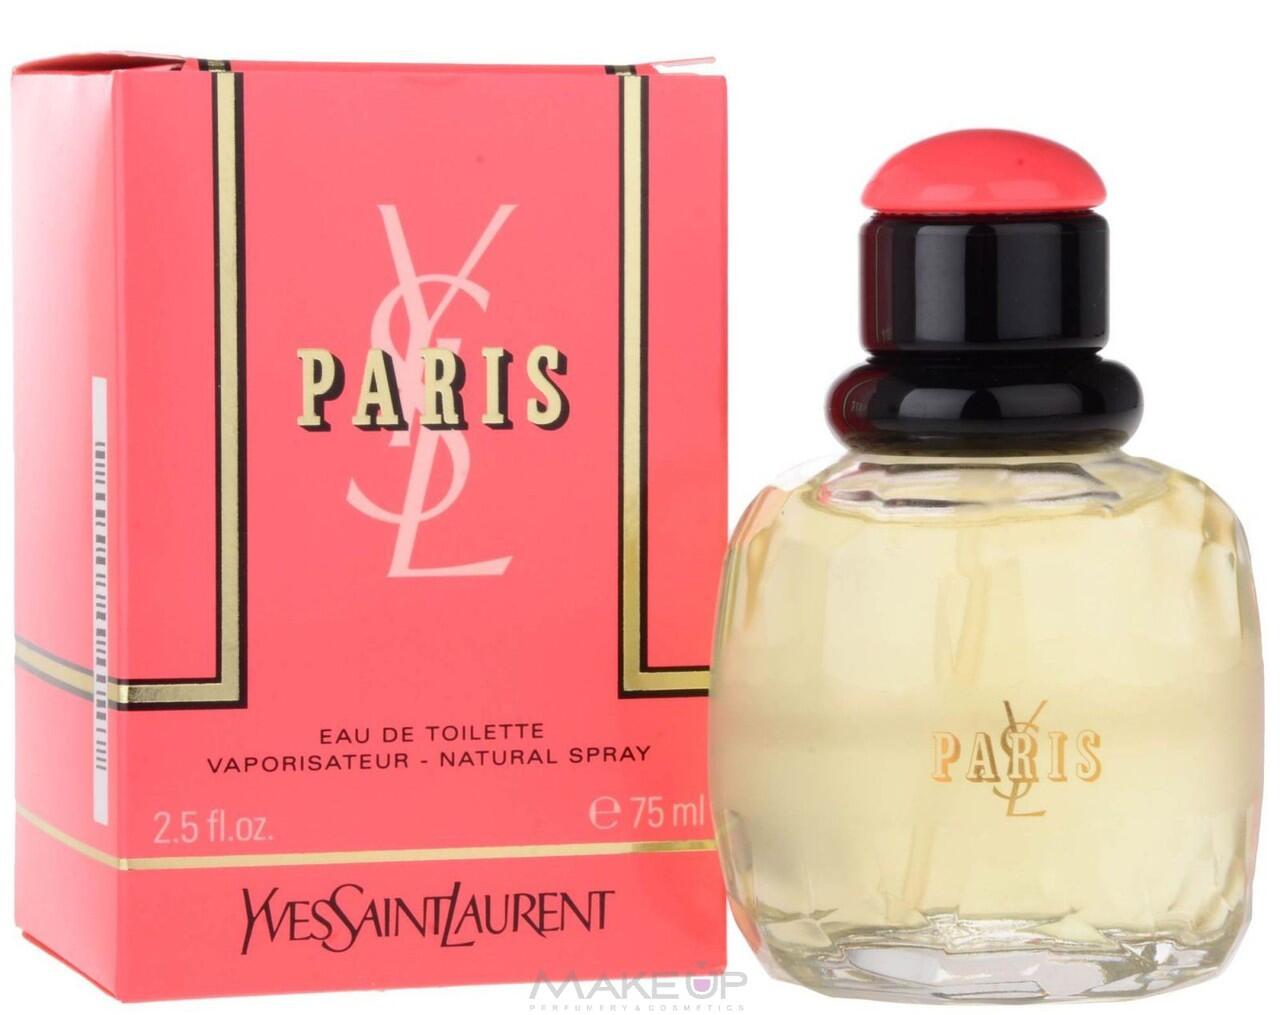 Parfum Original Yves Saint Laurent All Item Part 2